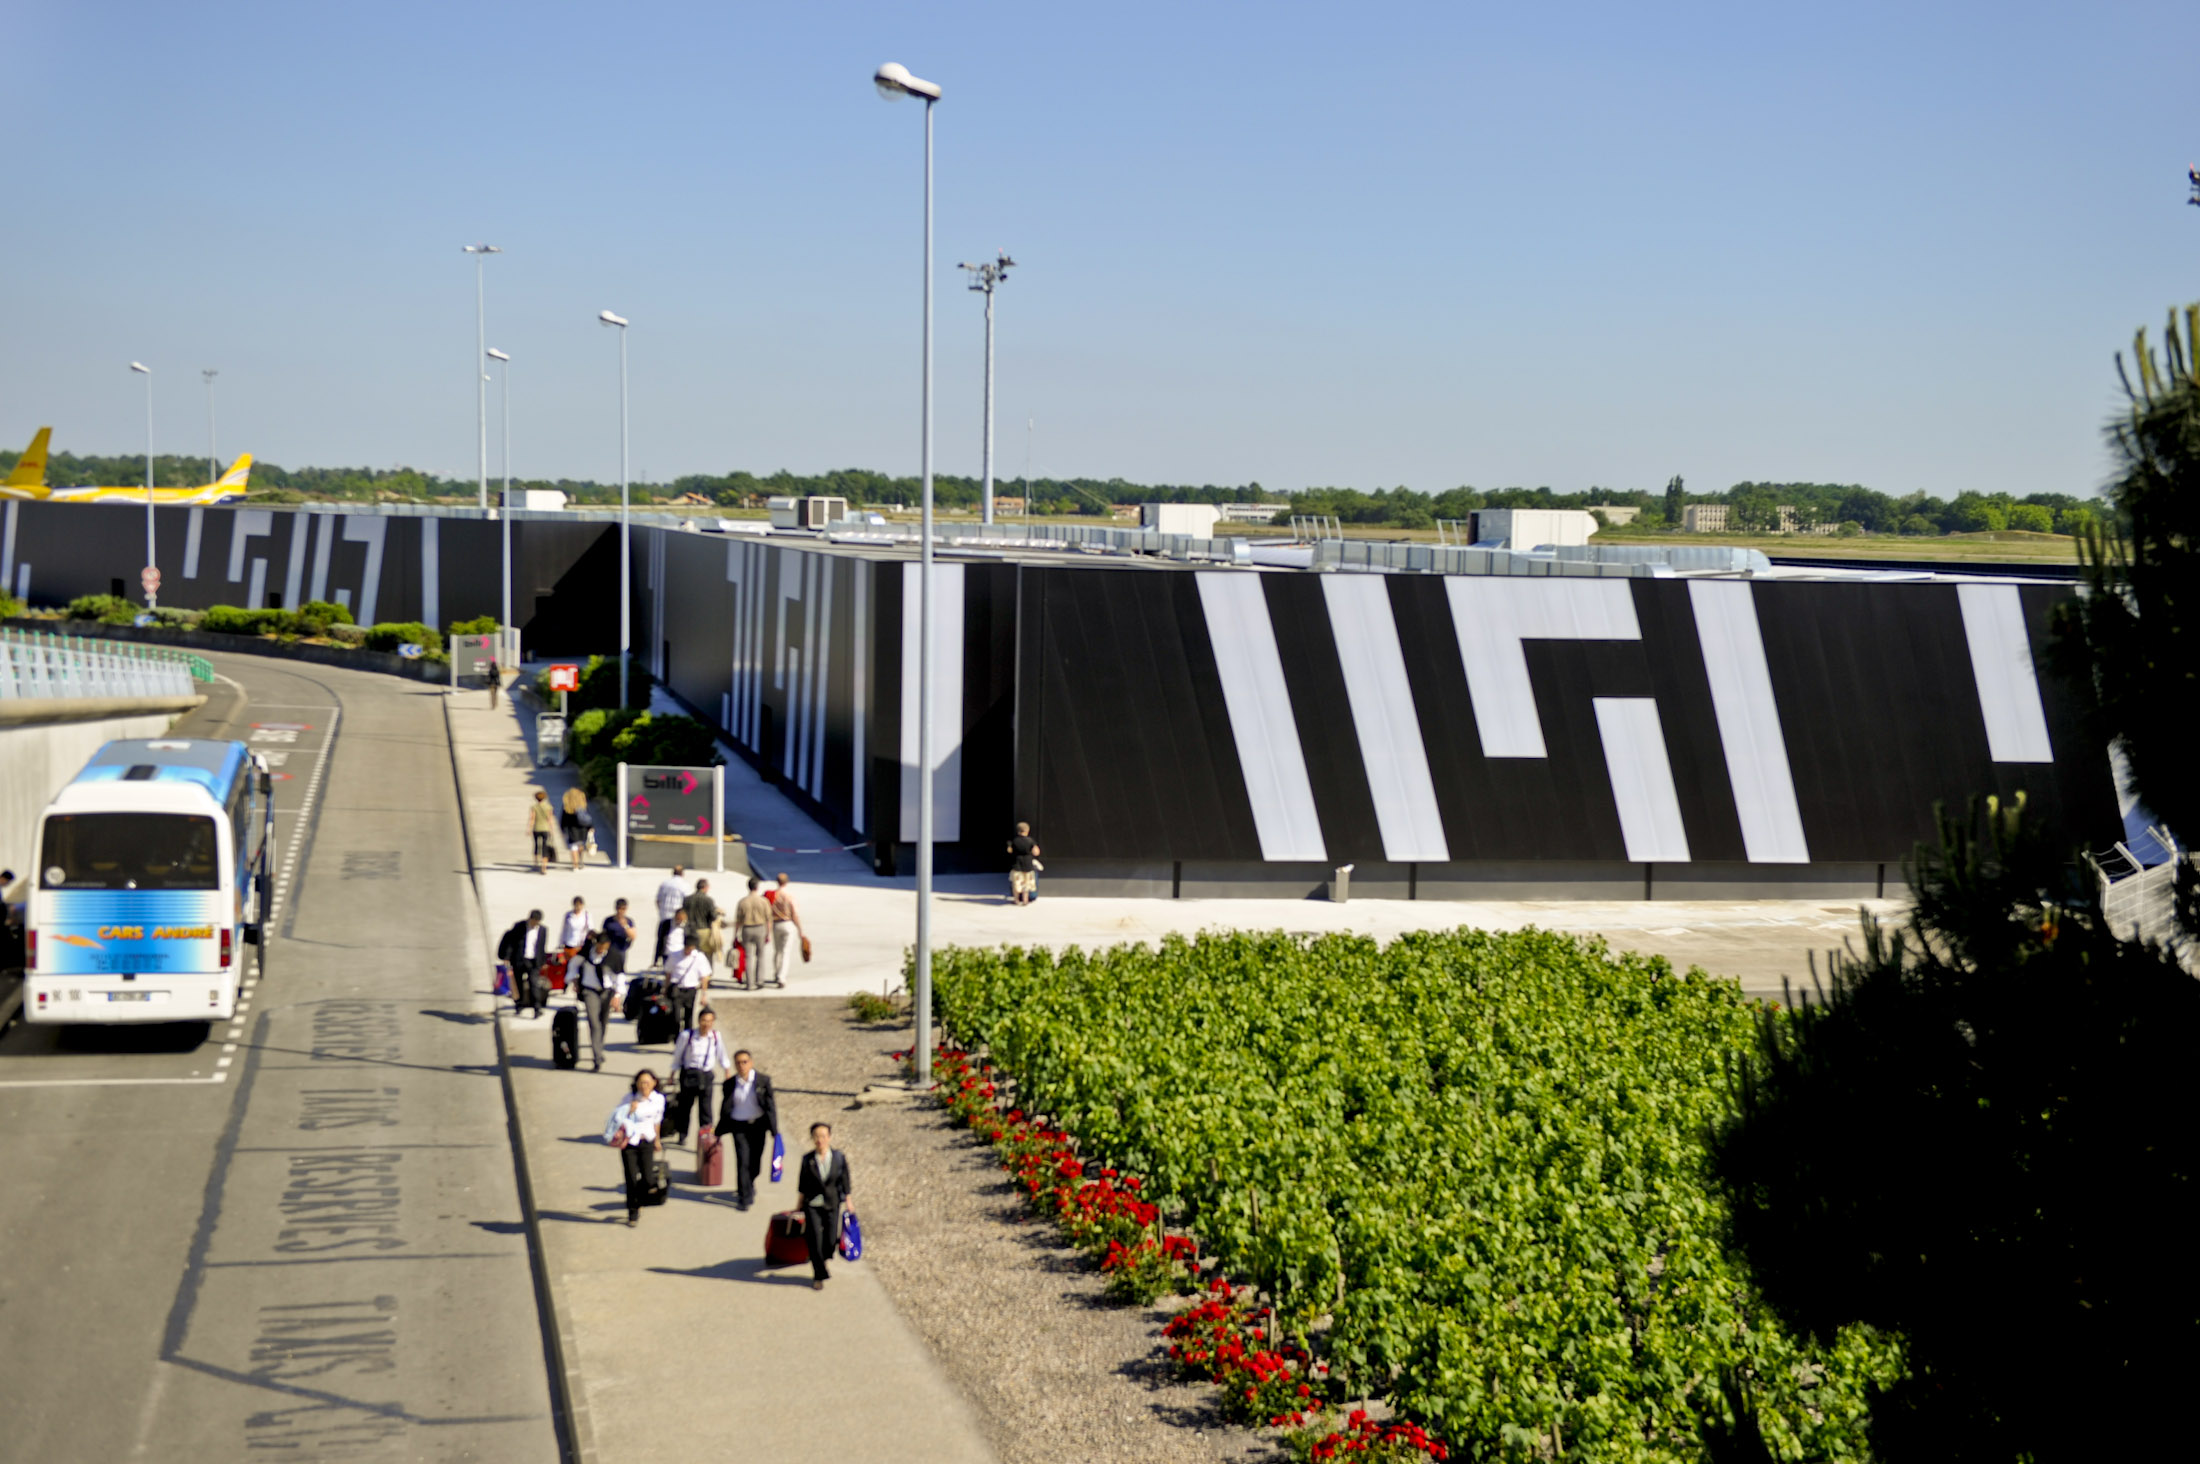 Le terminal low cost de l'aéroport de Bordeaux ferme pour 3 semaines